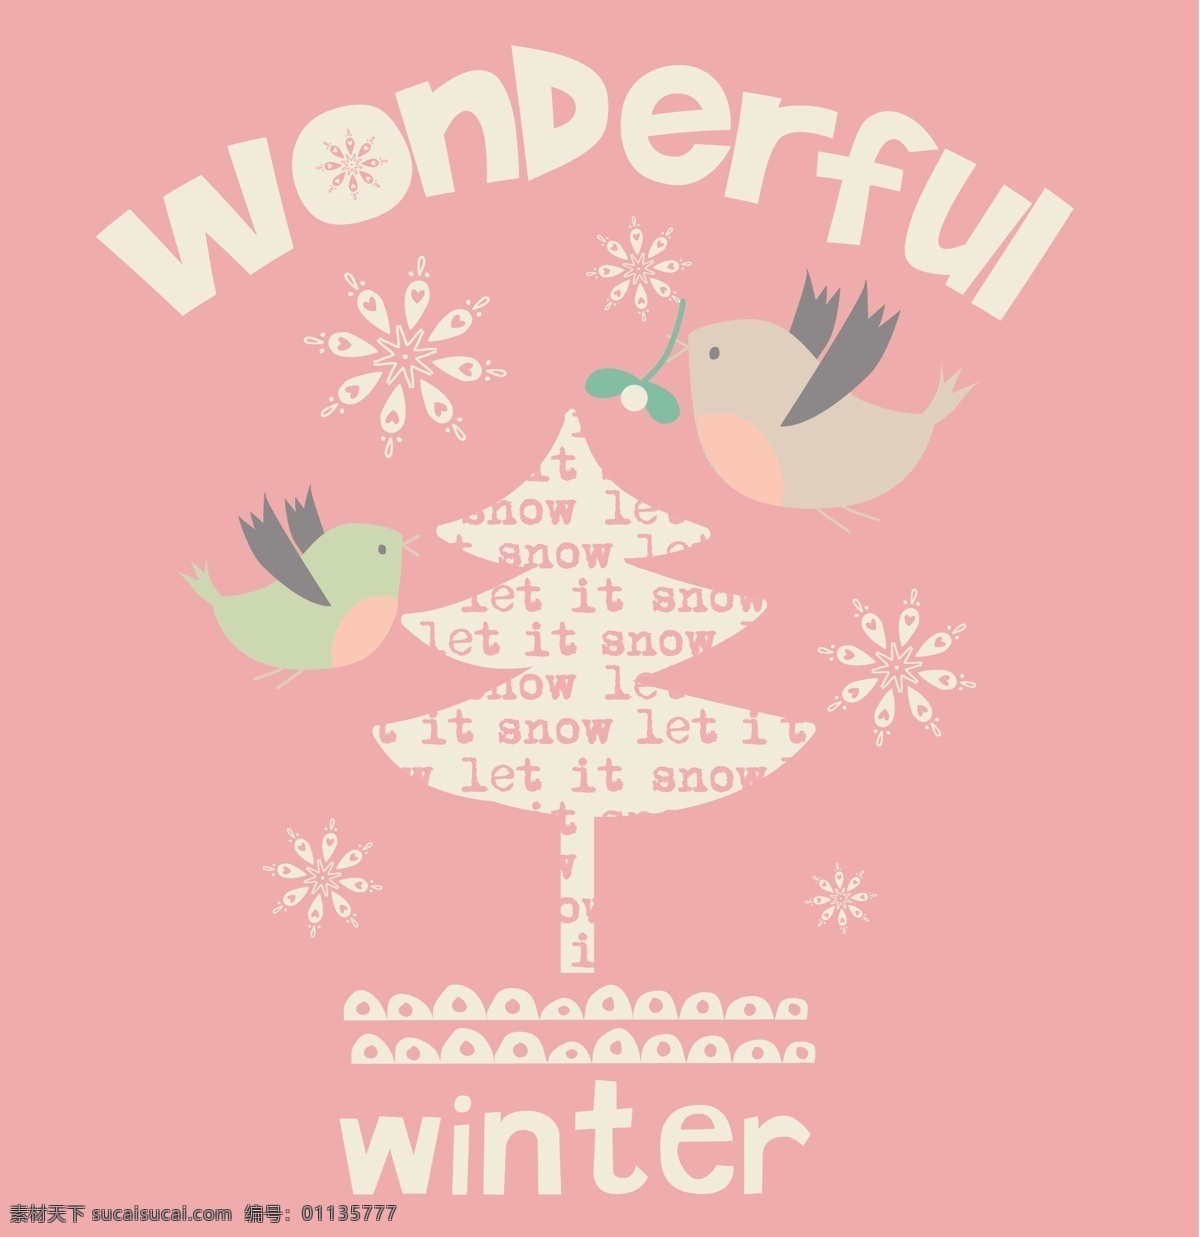 卡通 小树 可爱 下雪 主题 服装 图案 矢量 小鸟 粉红色 黑板 手绘 英文 插画 线条 水果 蔬菜